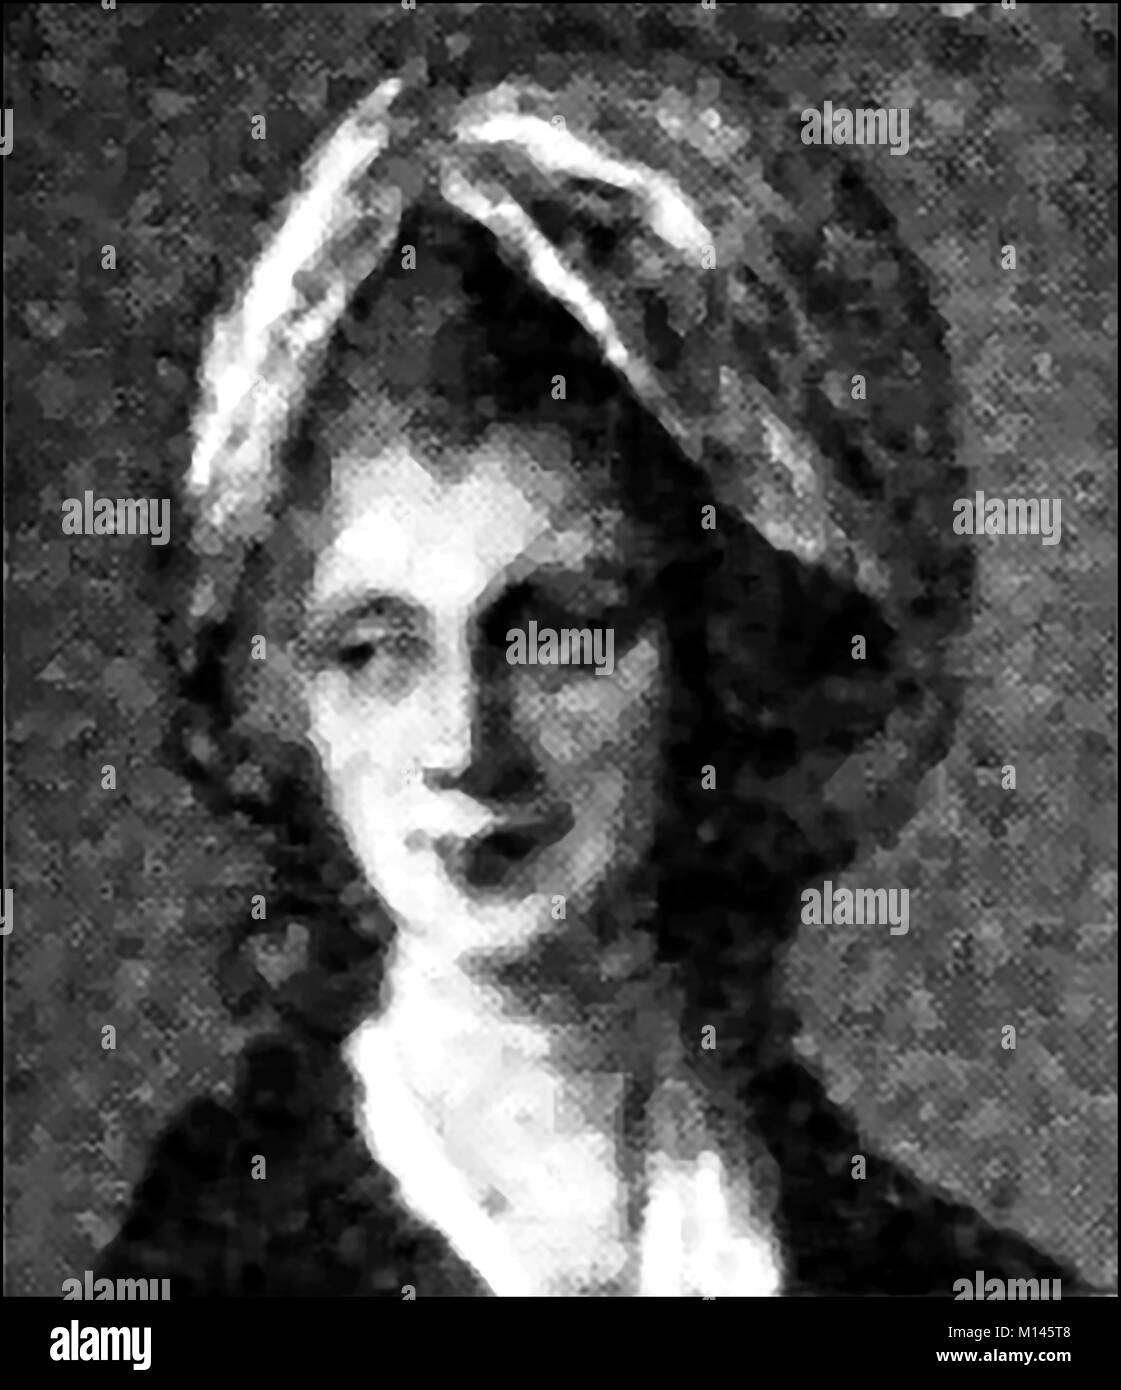 La Reina Sofía Carlota de Mecklenburg-Strelitz,(1744-1818), esposa del rey George III de Gran Bretaña e Irlanda y de Hannover Electress - un retrato impreso 1921 - Ella era un botánico aficionado que ayudaron a ampliar los jardines de Kew, Londres Foto de stock